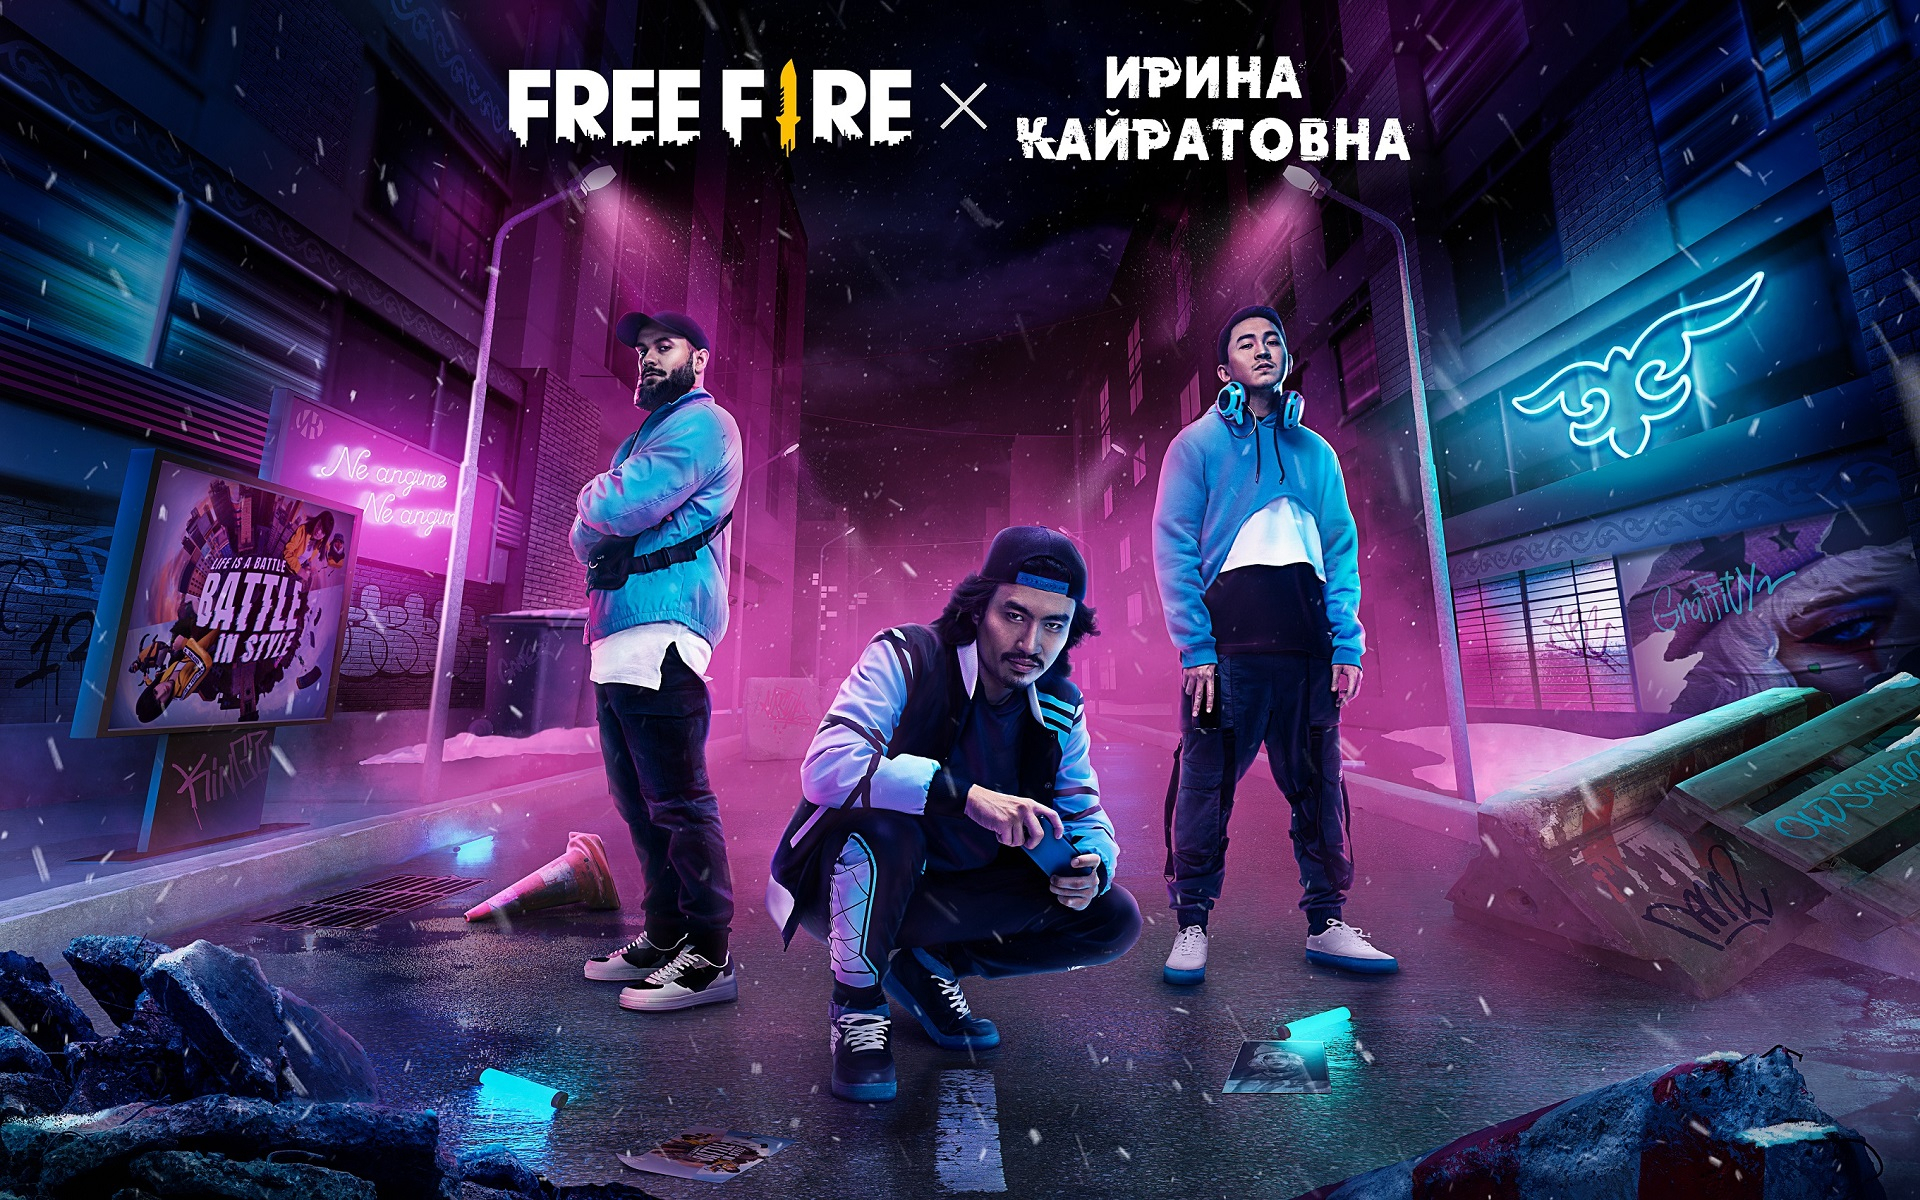 Музыкальная группа «Ирина Кайратовна» выпустила клип по мотивам Free Fire —  сейчас в игре проходит крупное событие